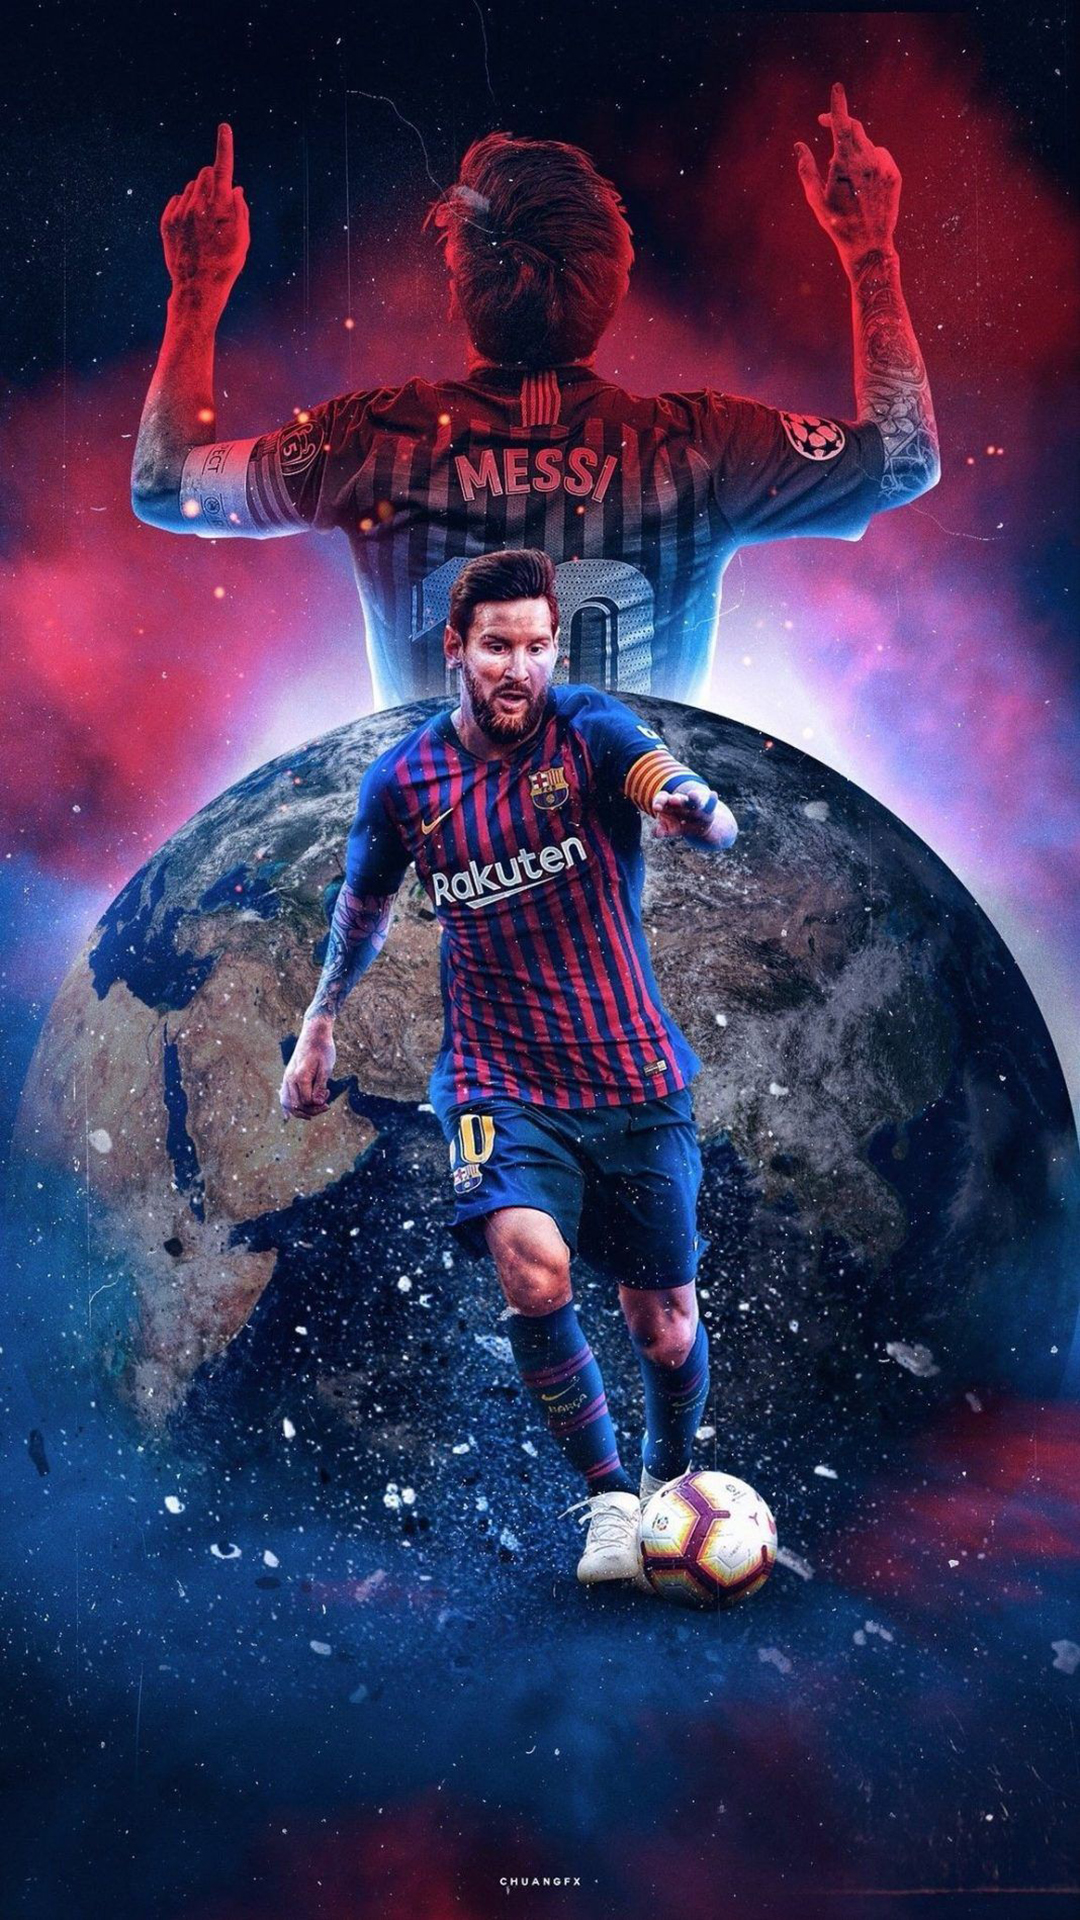 Tận hưởng những hình ảnh đẹp và ngầu của Messi trong màu áo Barcelona thông qua bộ sưu tập hình nền của OÁCH XÀ LÀ BÁCH. Nơi đây có những hình ảnh mới nhất về Messi, giúp bạn thỏa mãn đam mê và cảm nhận sự mạnh mẽ, tinh thần chiến đấu và tài năng của siêu sao đẳng cấp này.